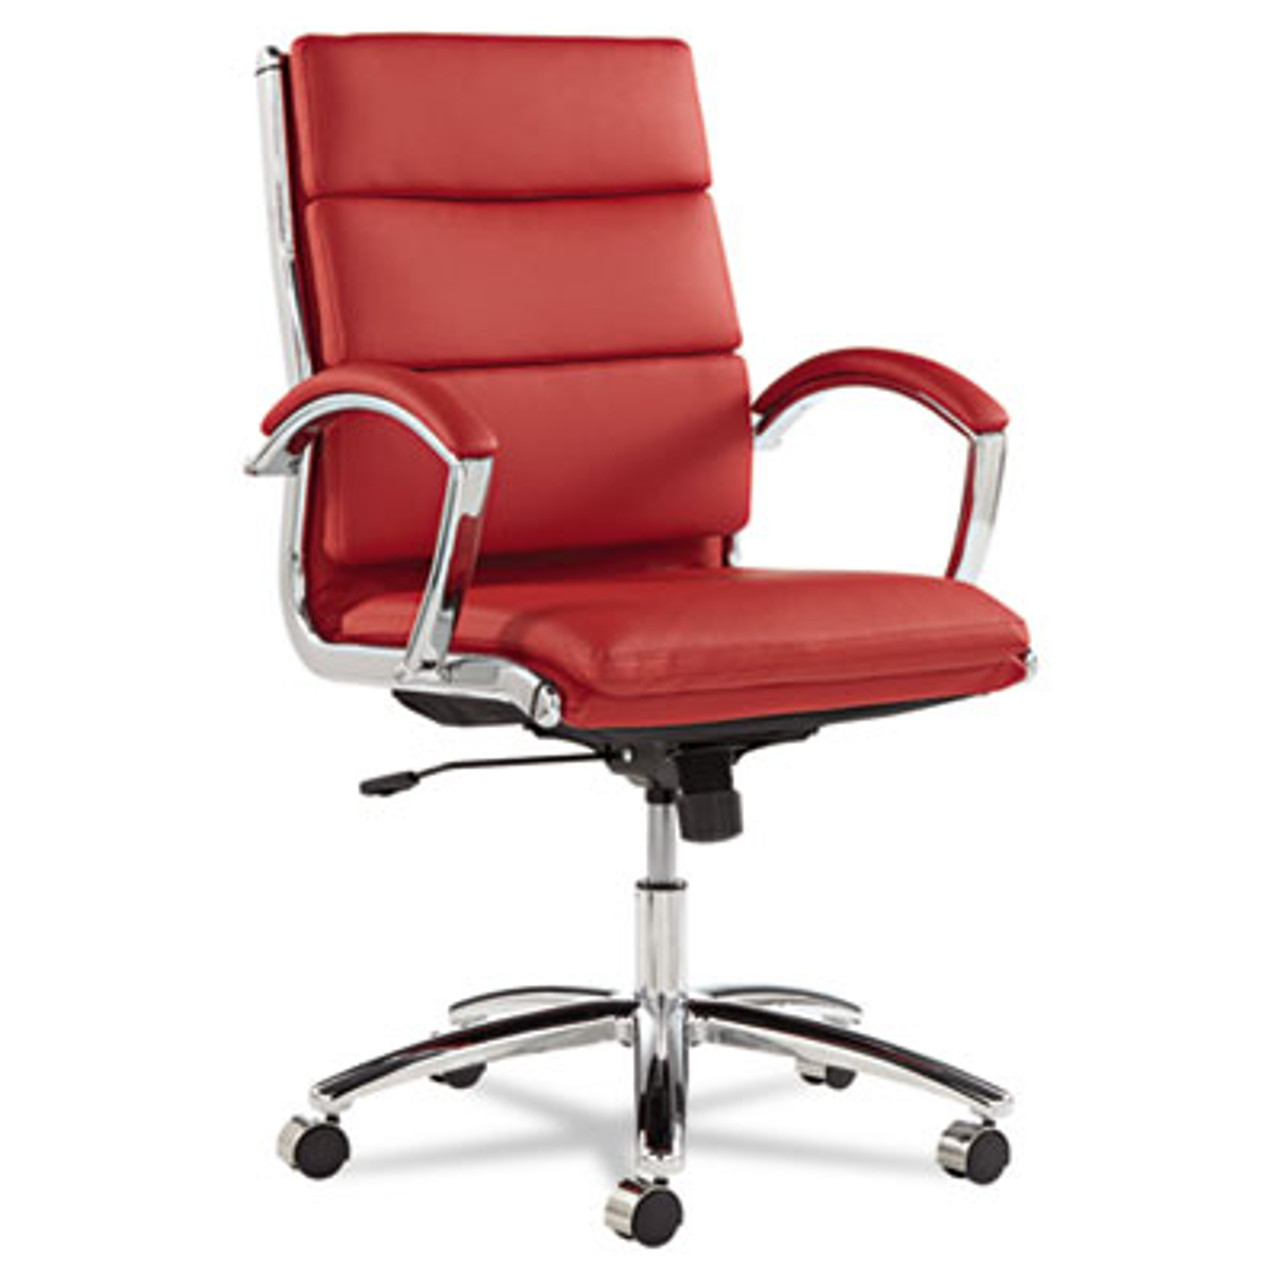 Neratoli Series Mid-Back Swivel/Tilt Chair, Red Leather, Chrome Frame